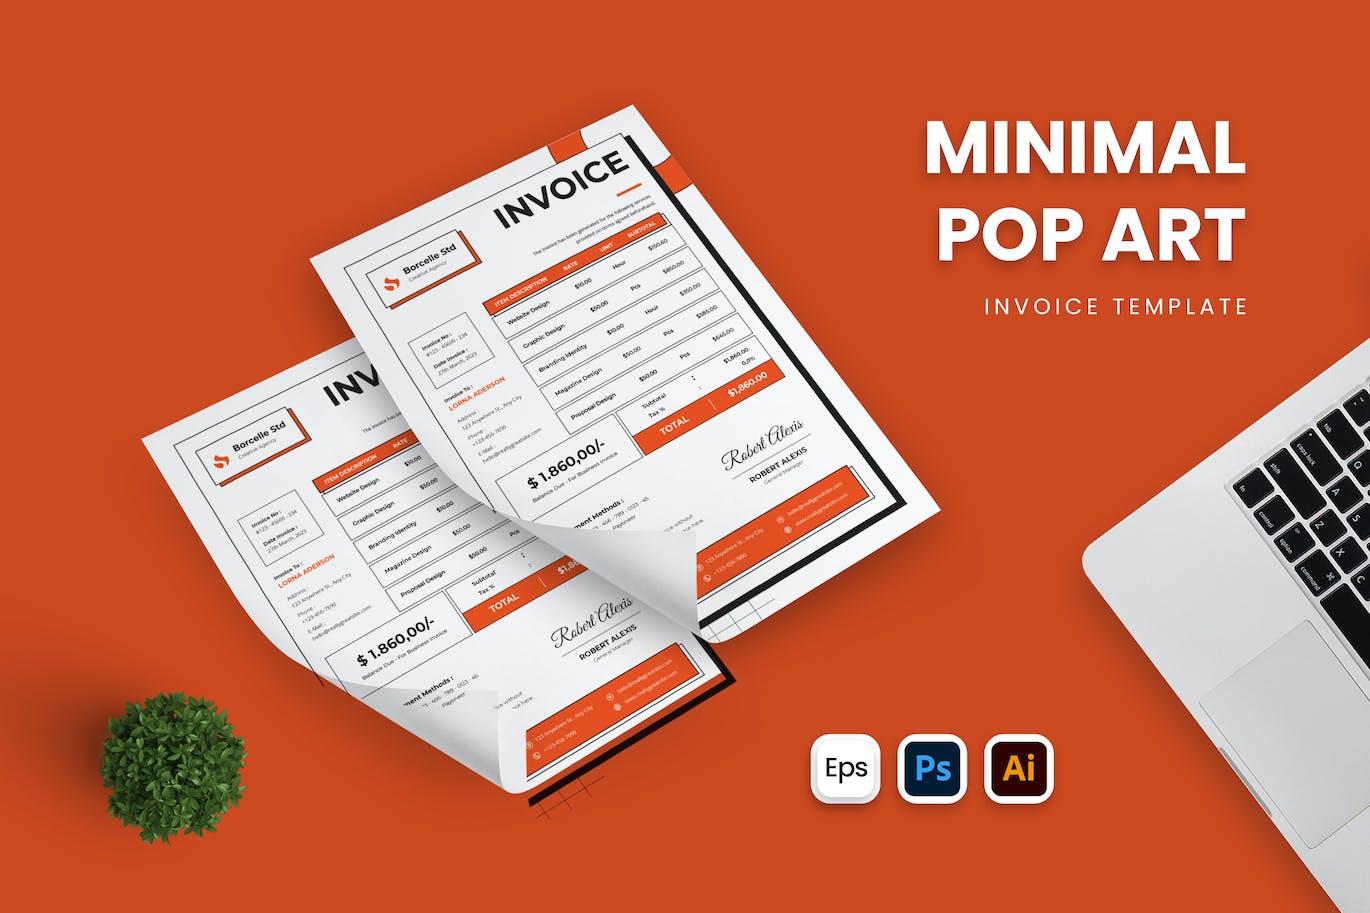 波普艺术商业单据发票设计模板 Minimal Pop Art Invoice 样机素材 第1张